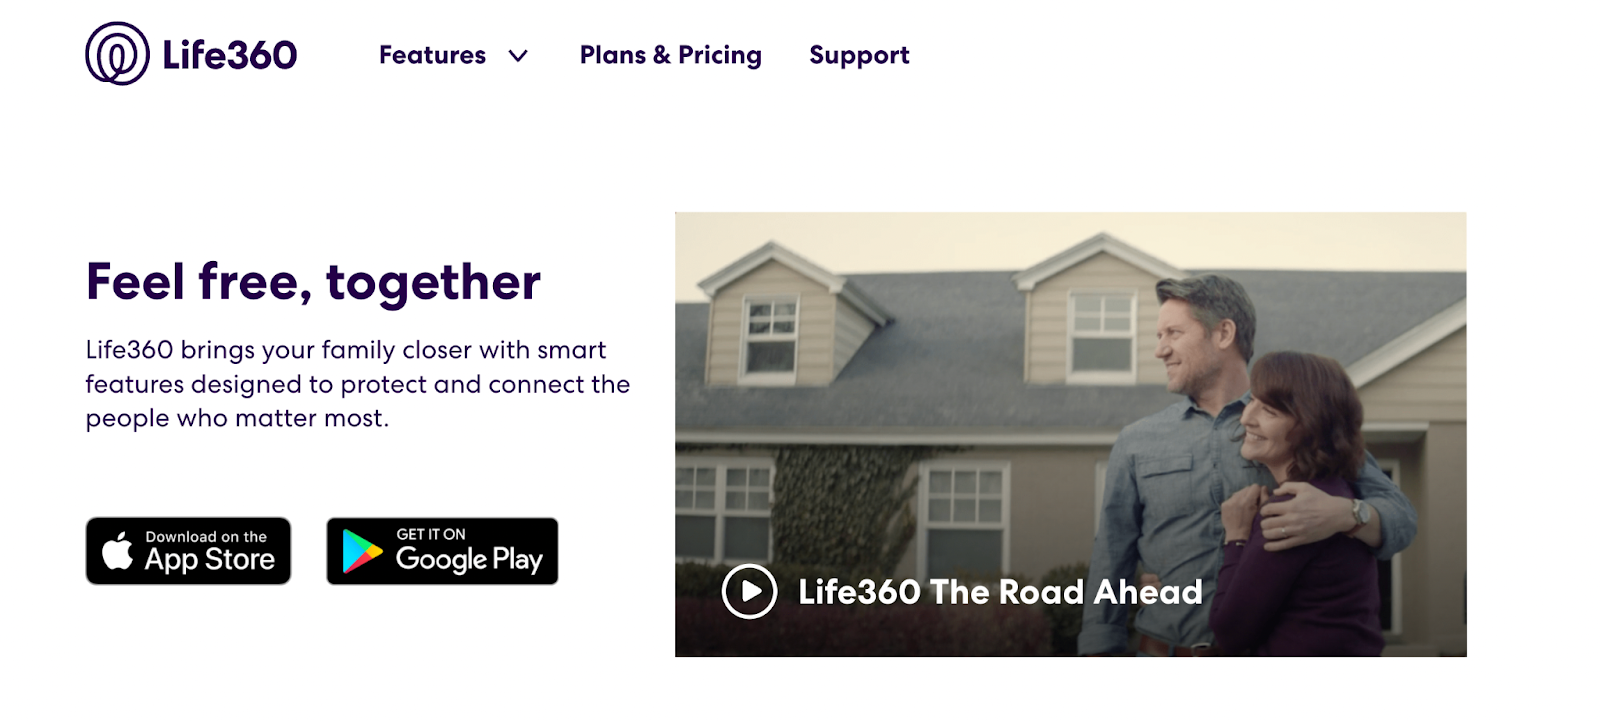 Life360 Family location tracker app